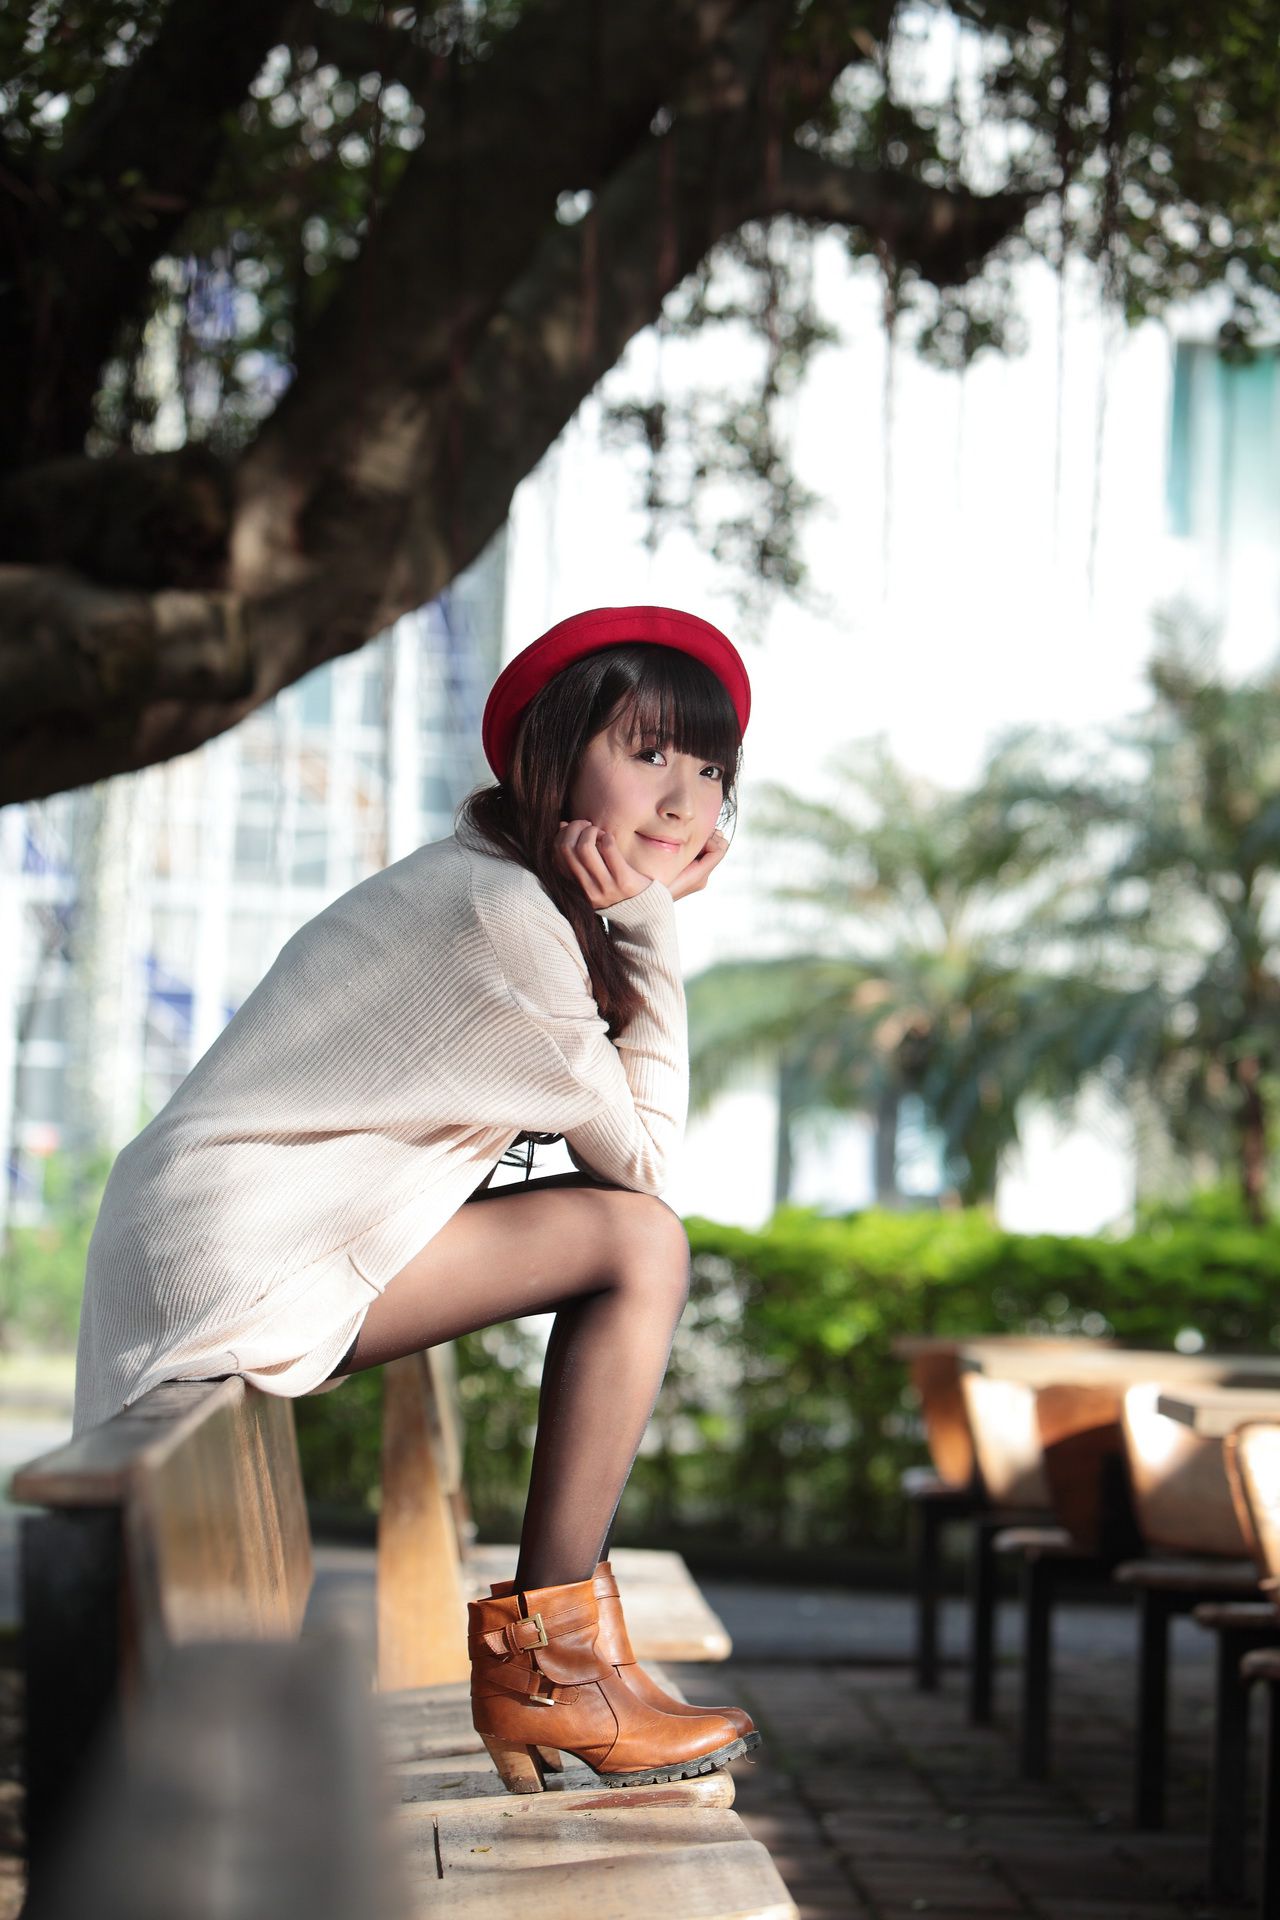 台湾萝莉正妹模特綠豆《小清新唯美外拍》写真集3